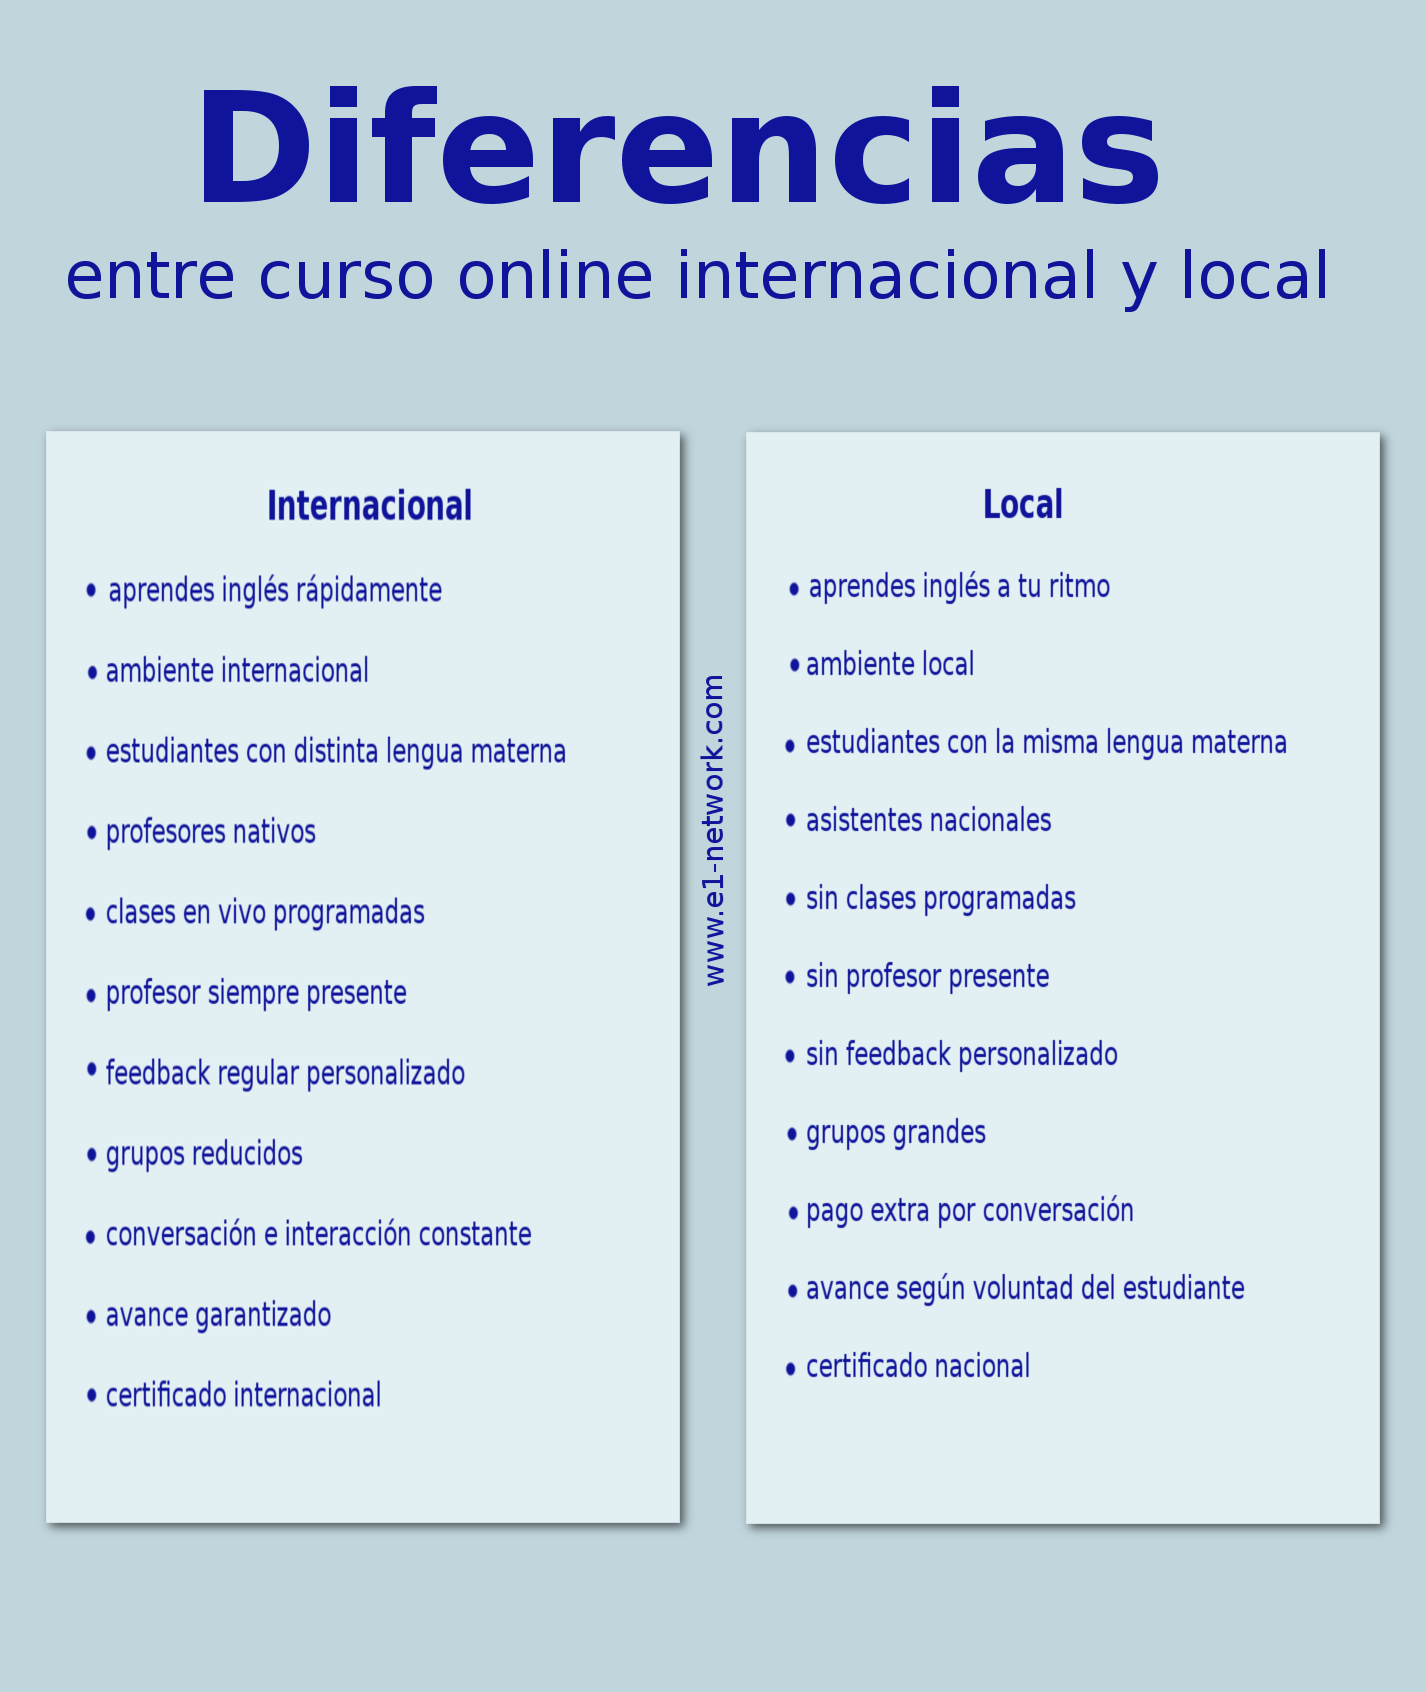 Lista de diferencias entre curso online local e internacional